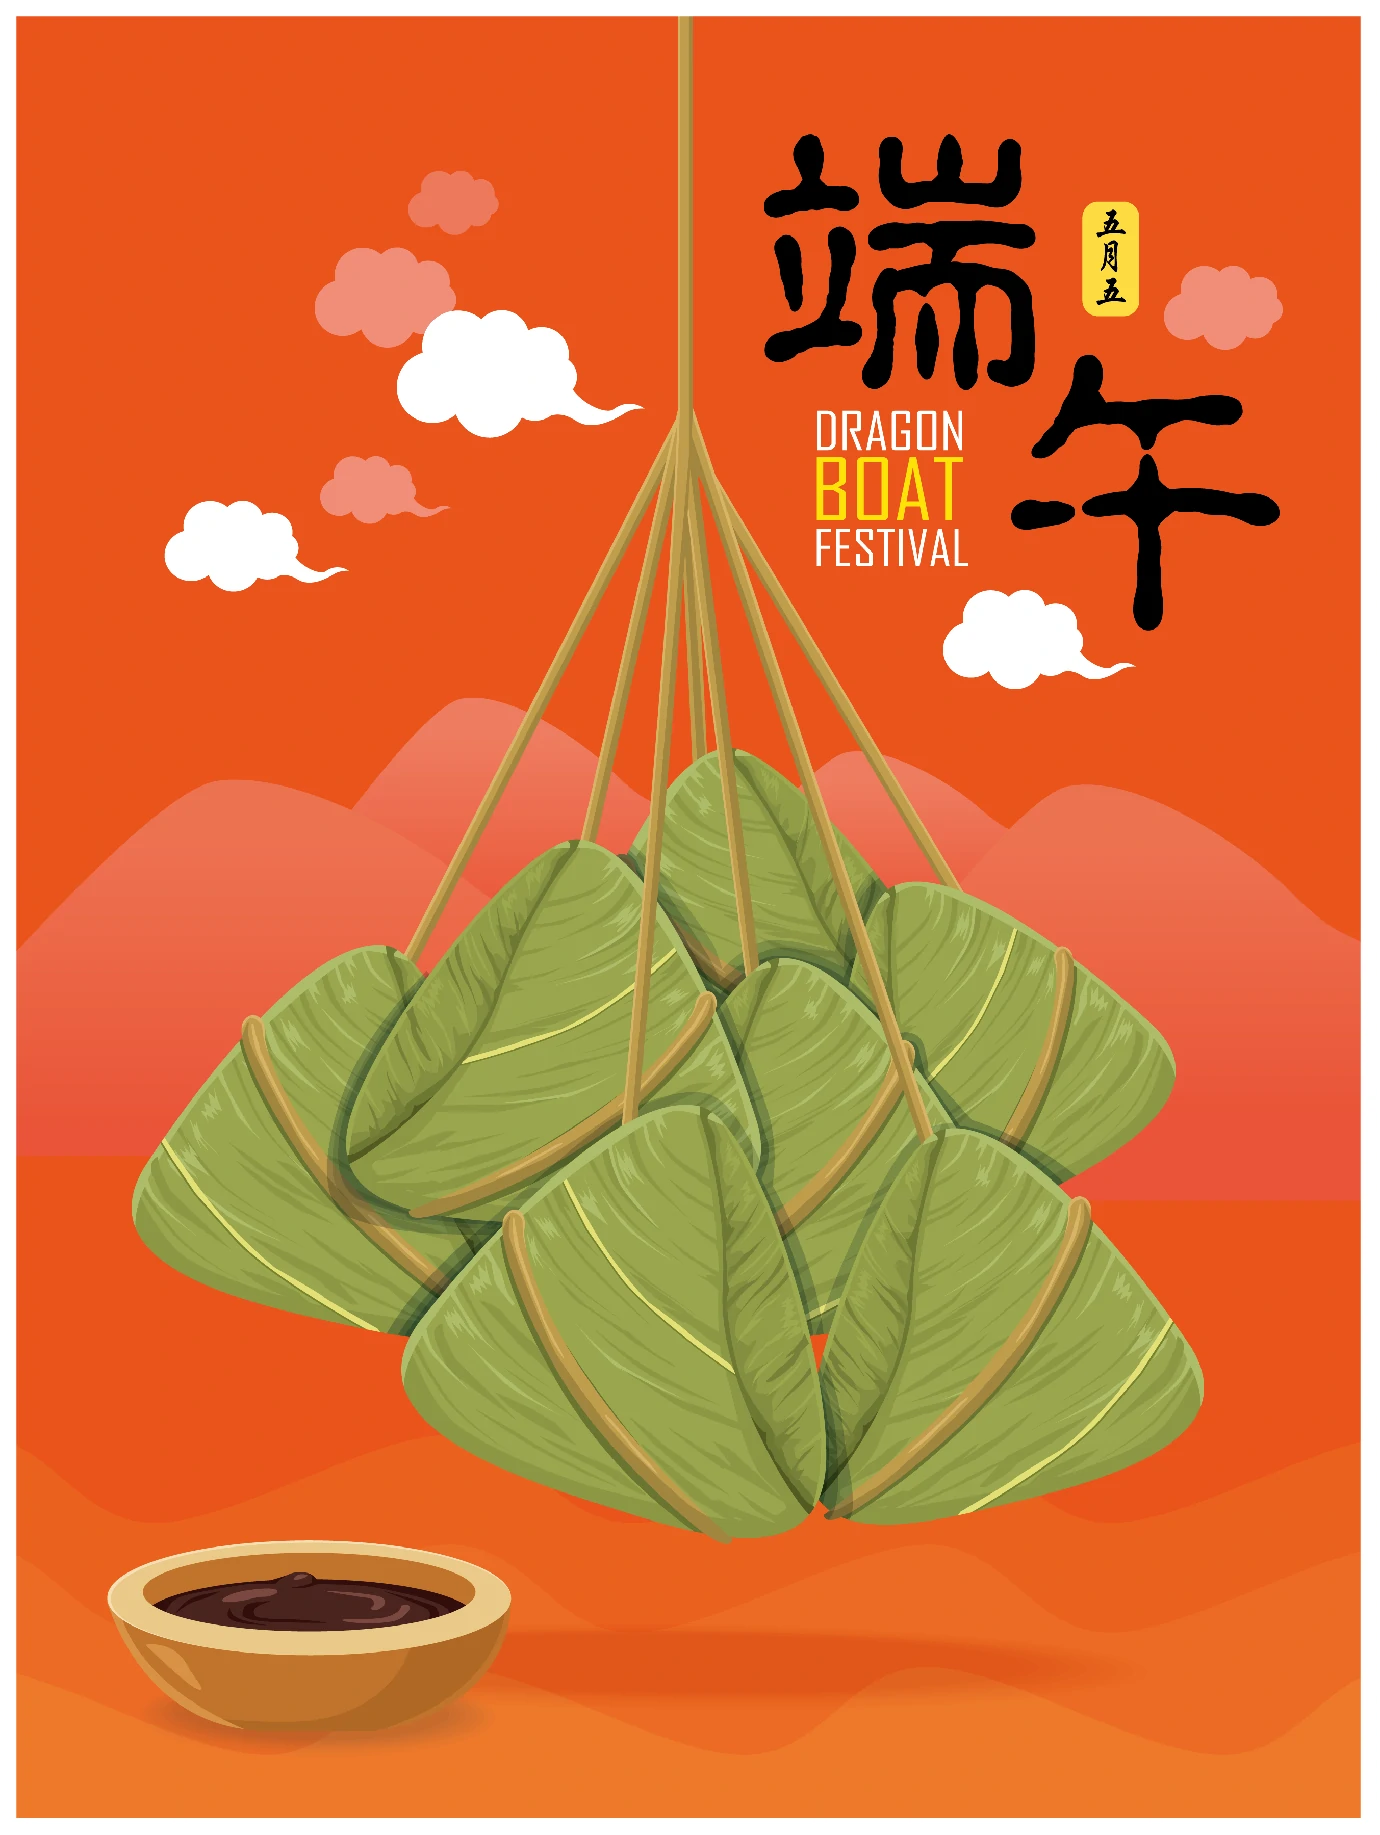 中国传统节日卡通手绘端午节赛龙舟粽子插画海报AI矢量设计素材【014】